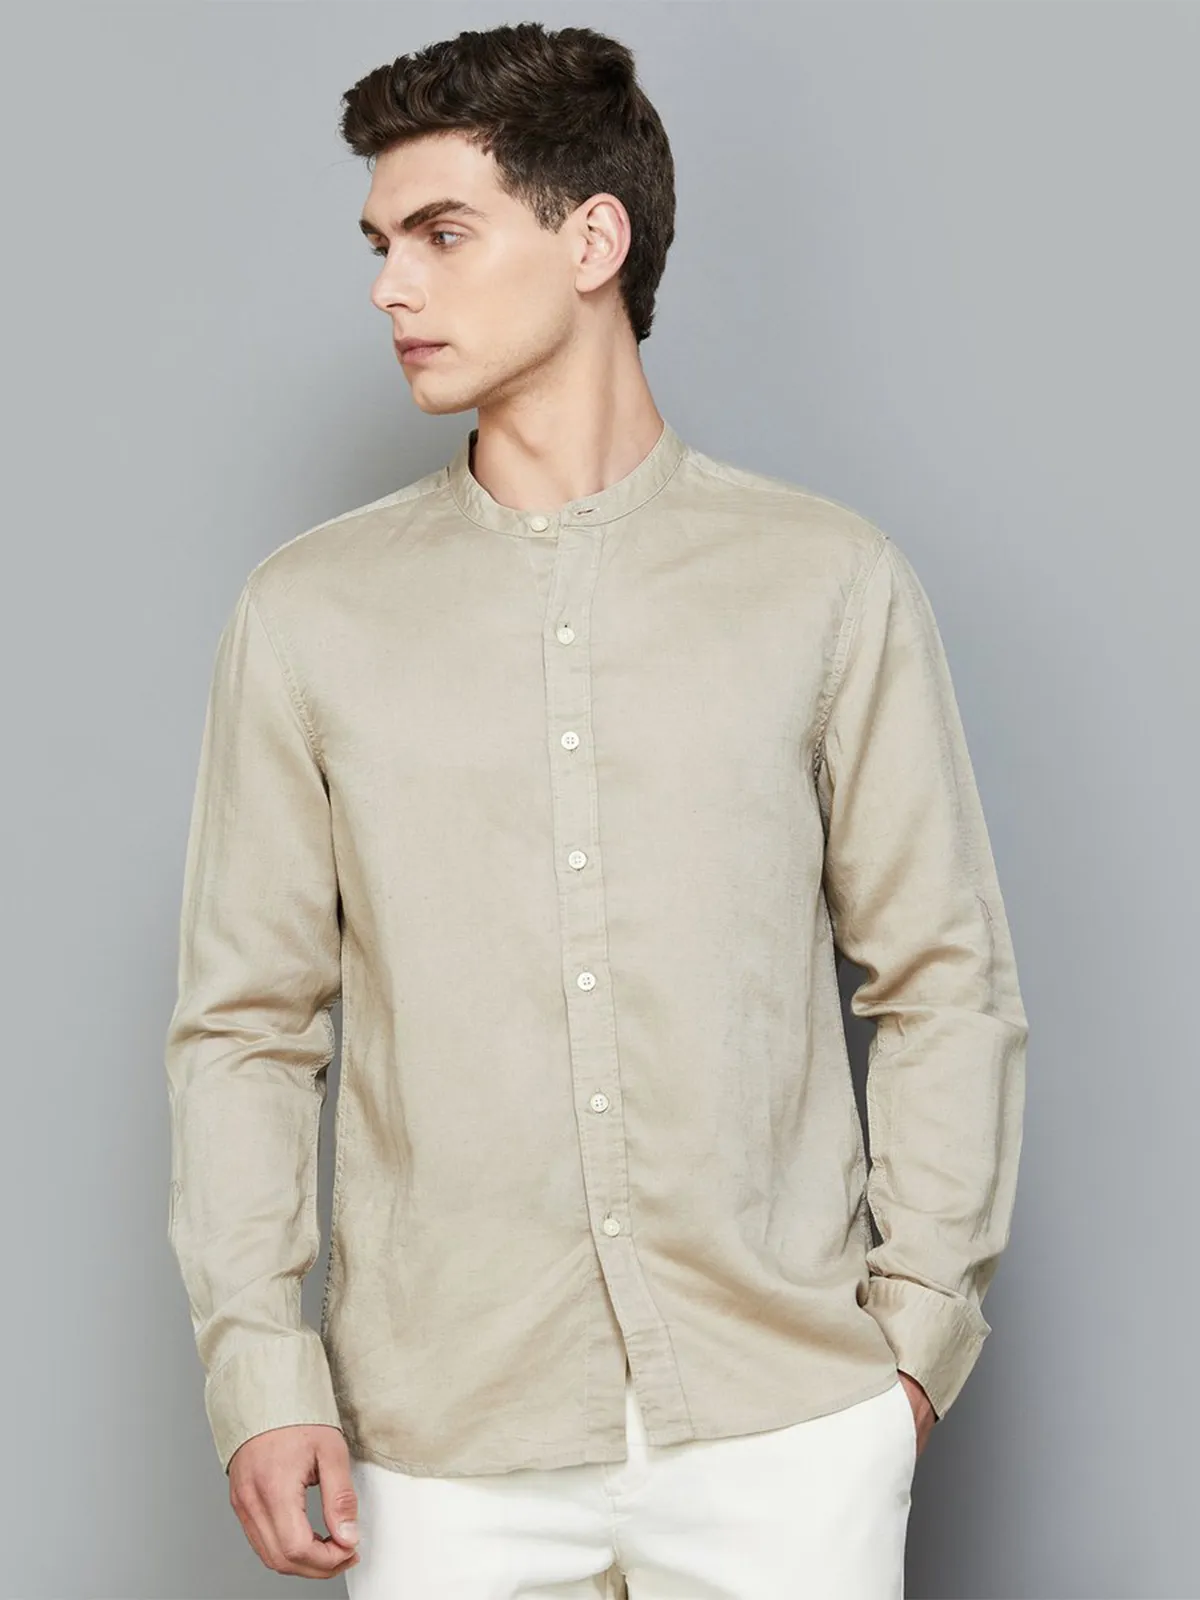 LEVIS beige cotton plain shirt